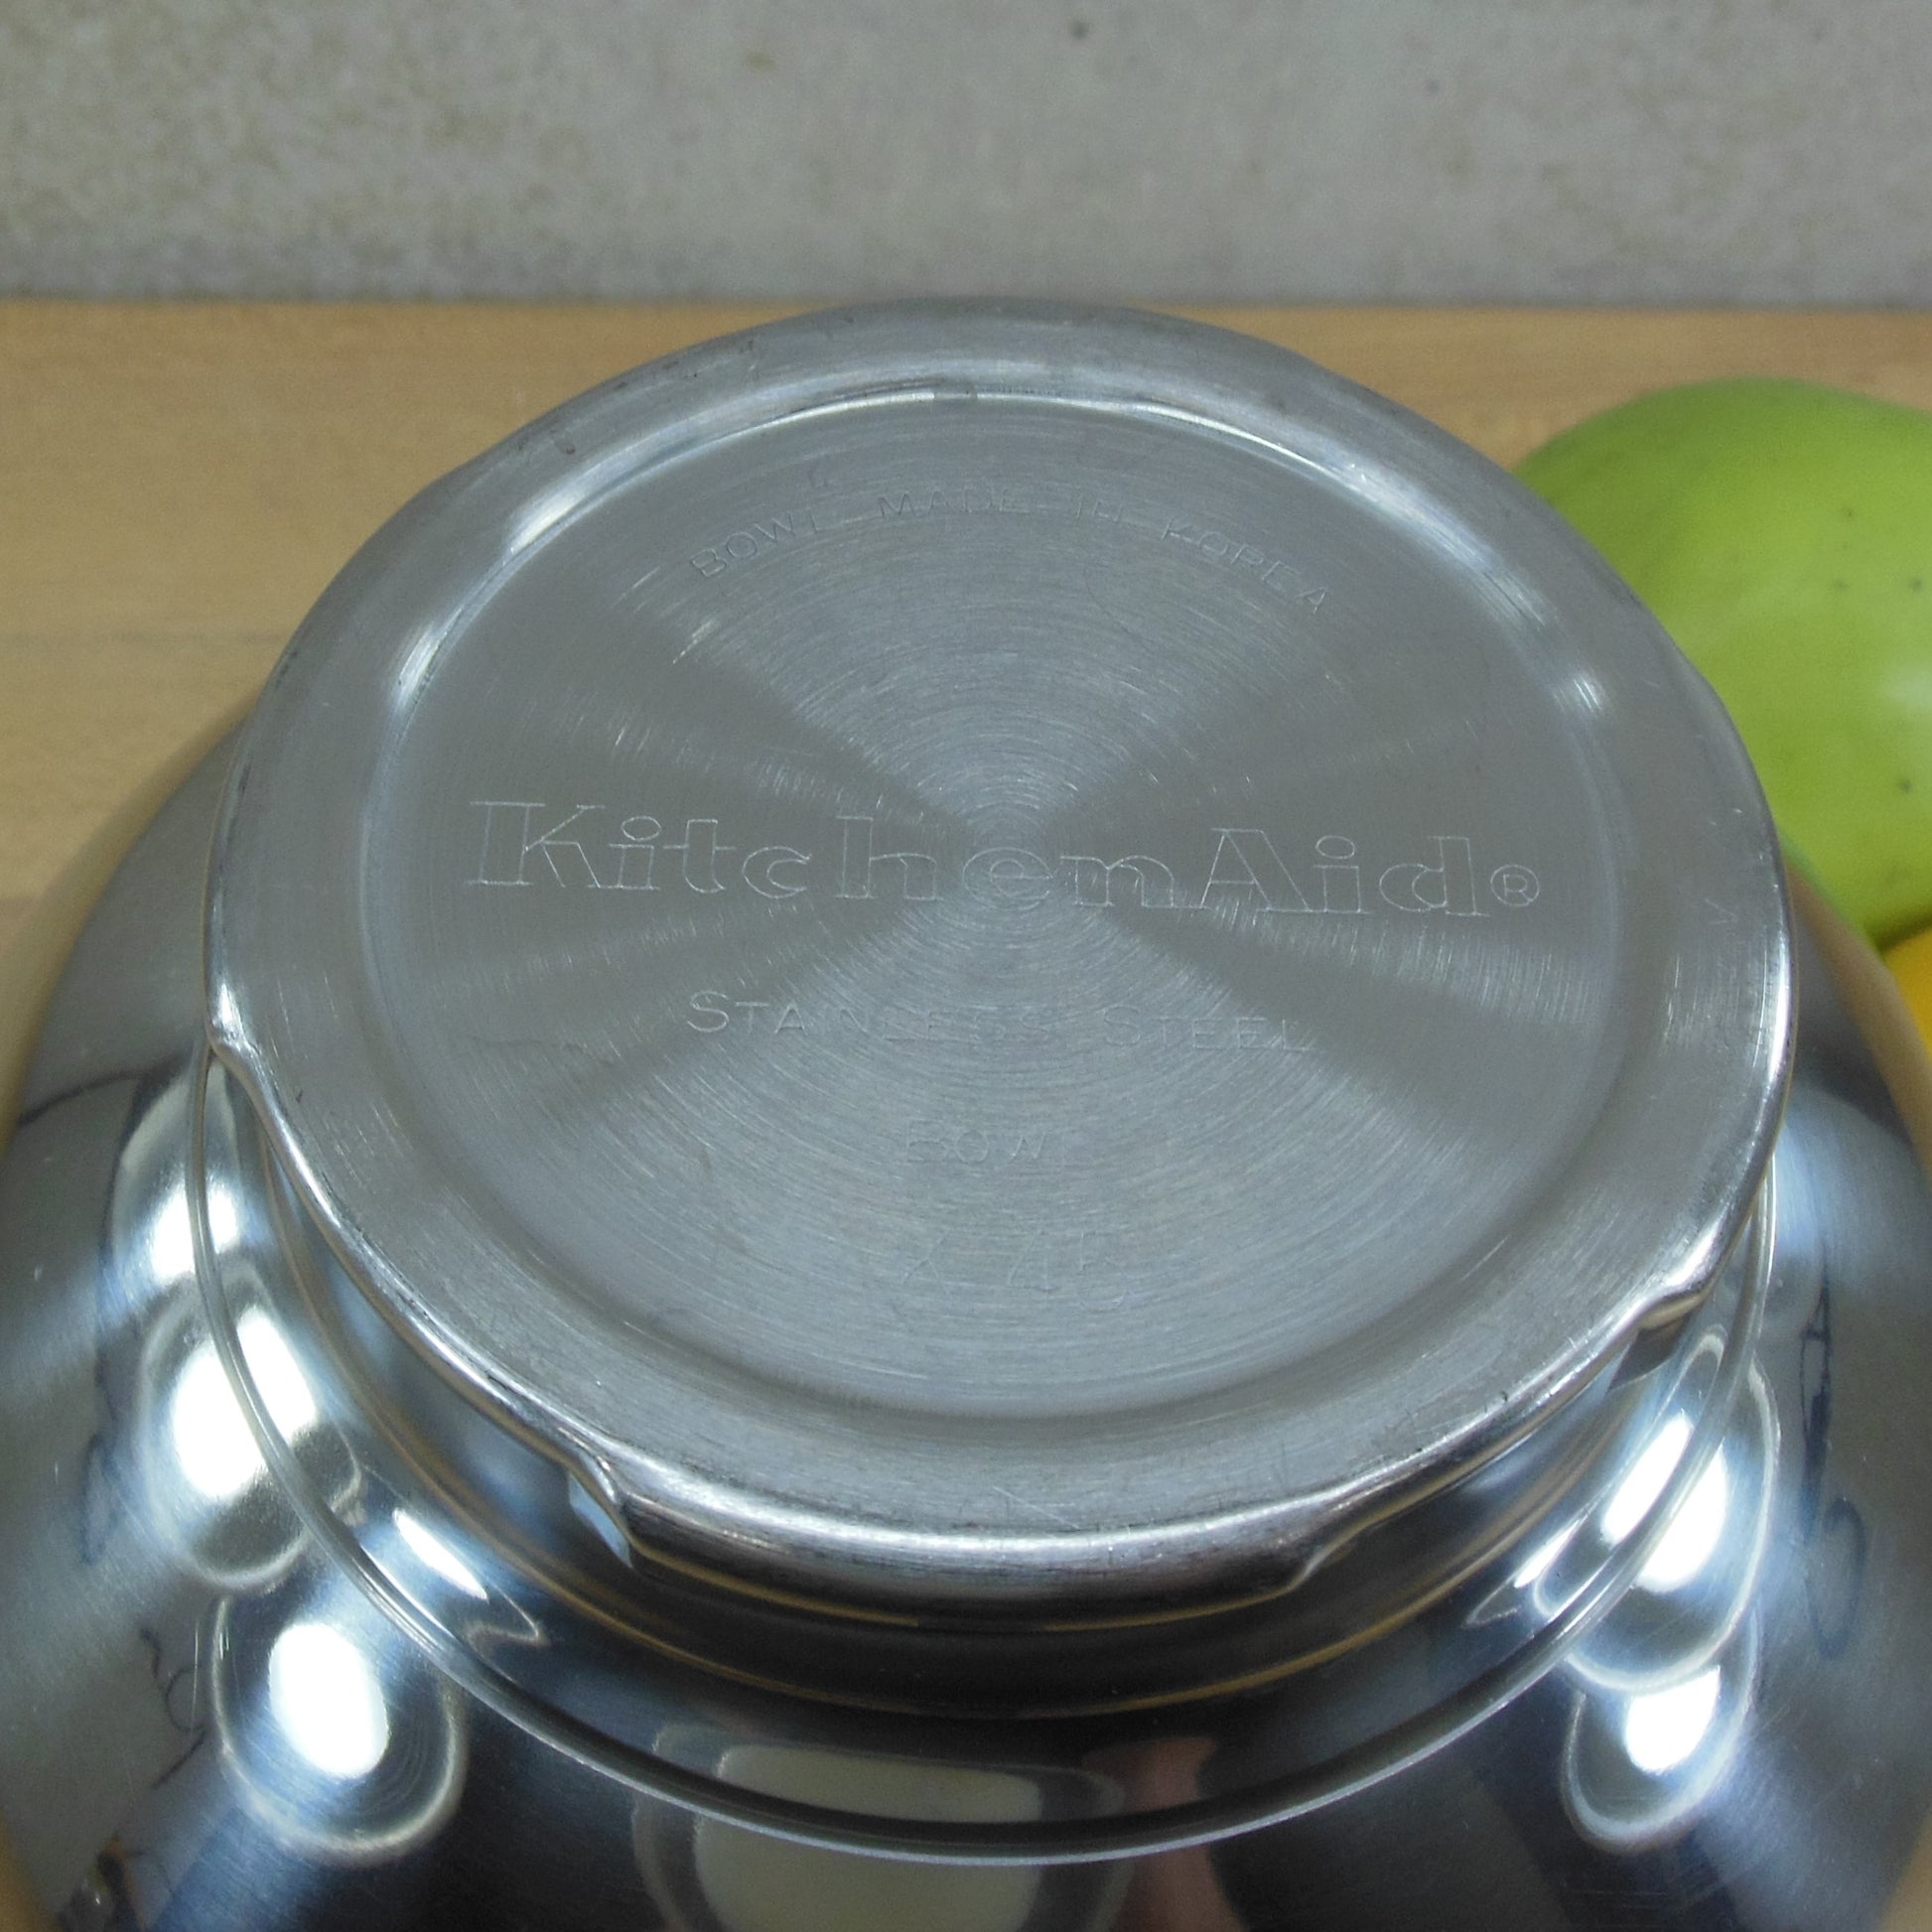 KitchenAid Korea K45 Stainless Steel 4.5 Quart Stand Mixer Bowl